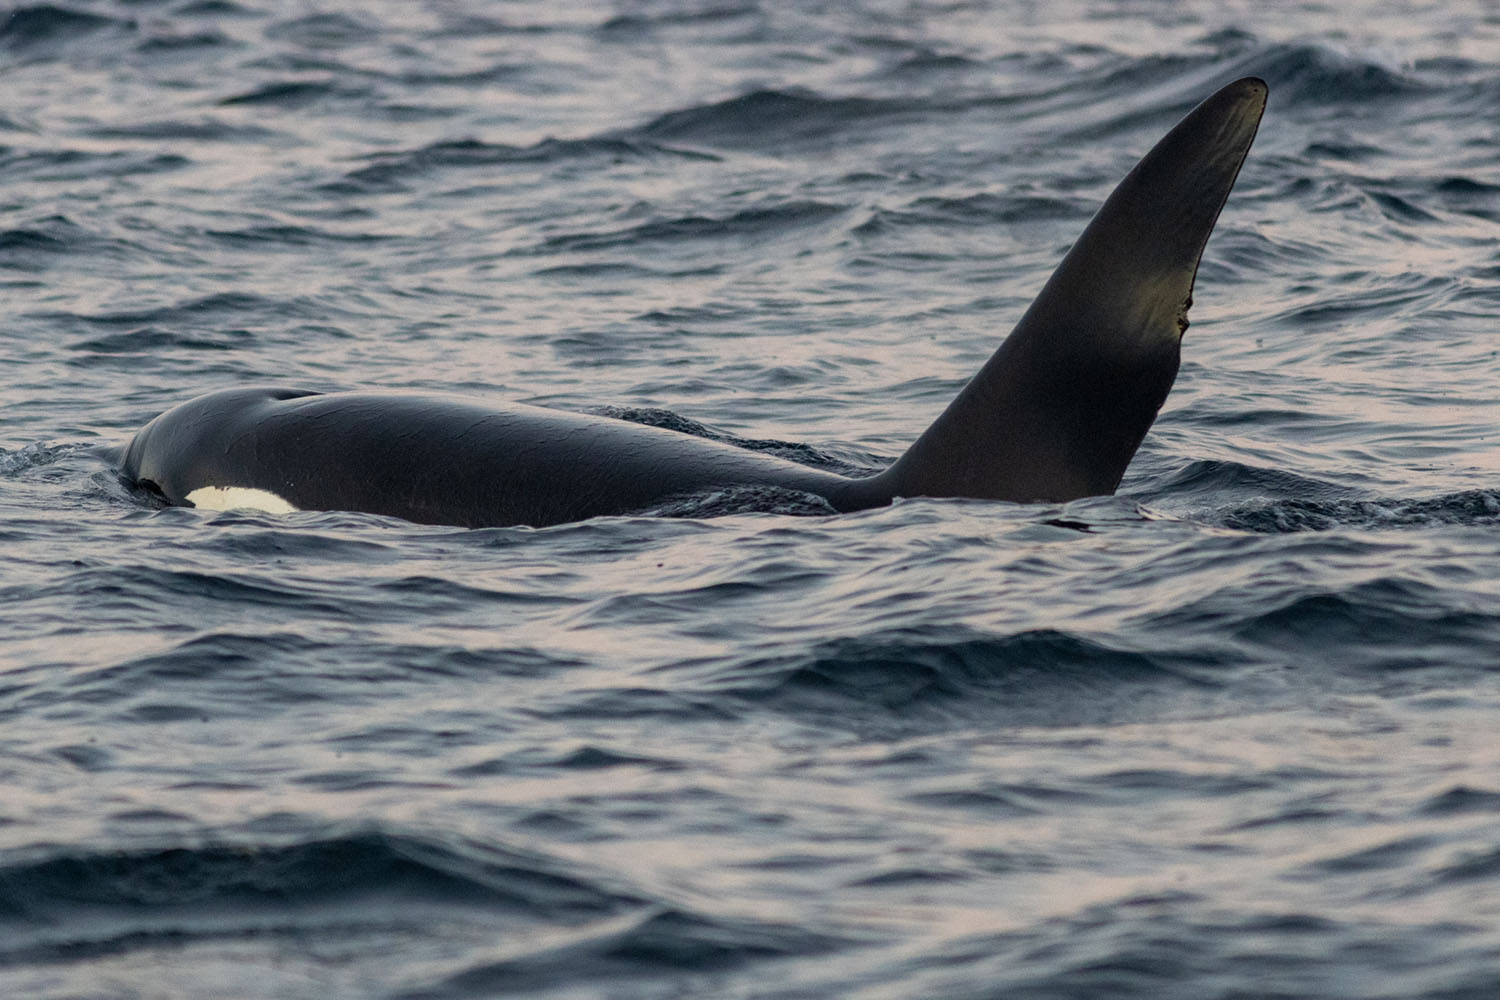 voyage scientifique - orques et baleines a bosse de norvege 19